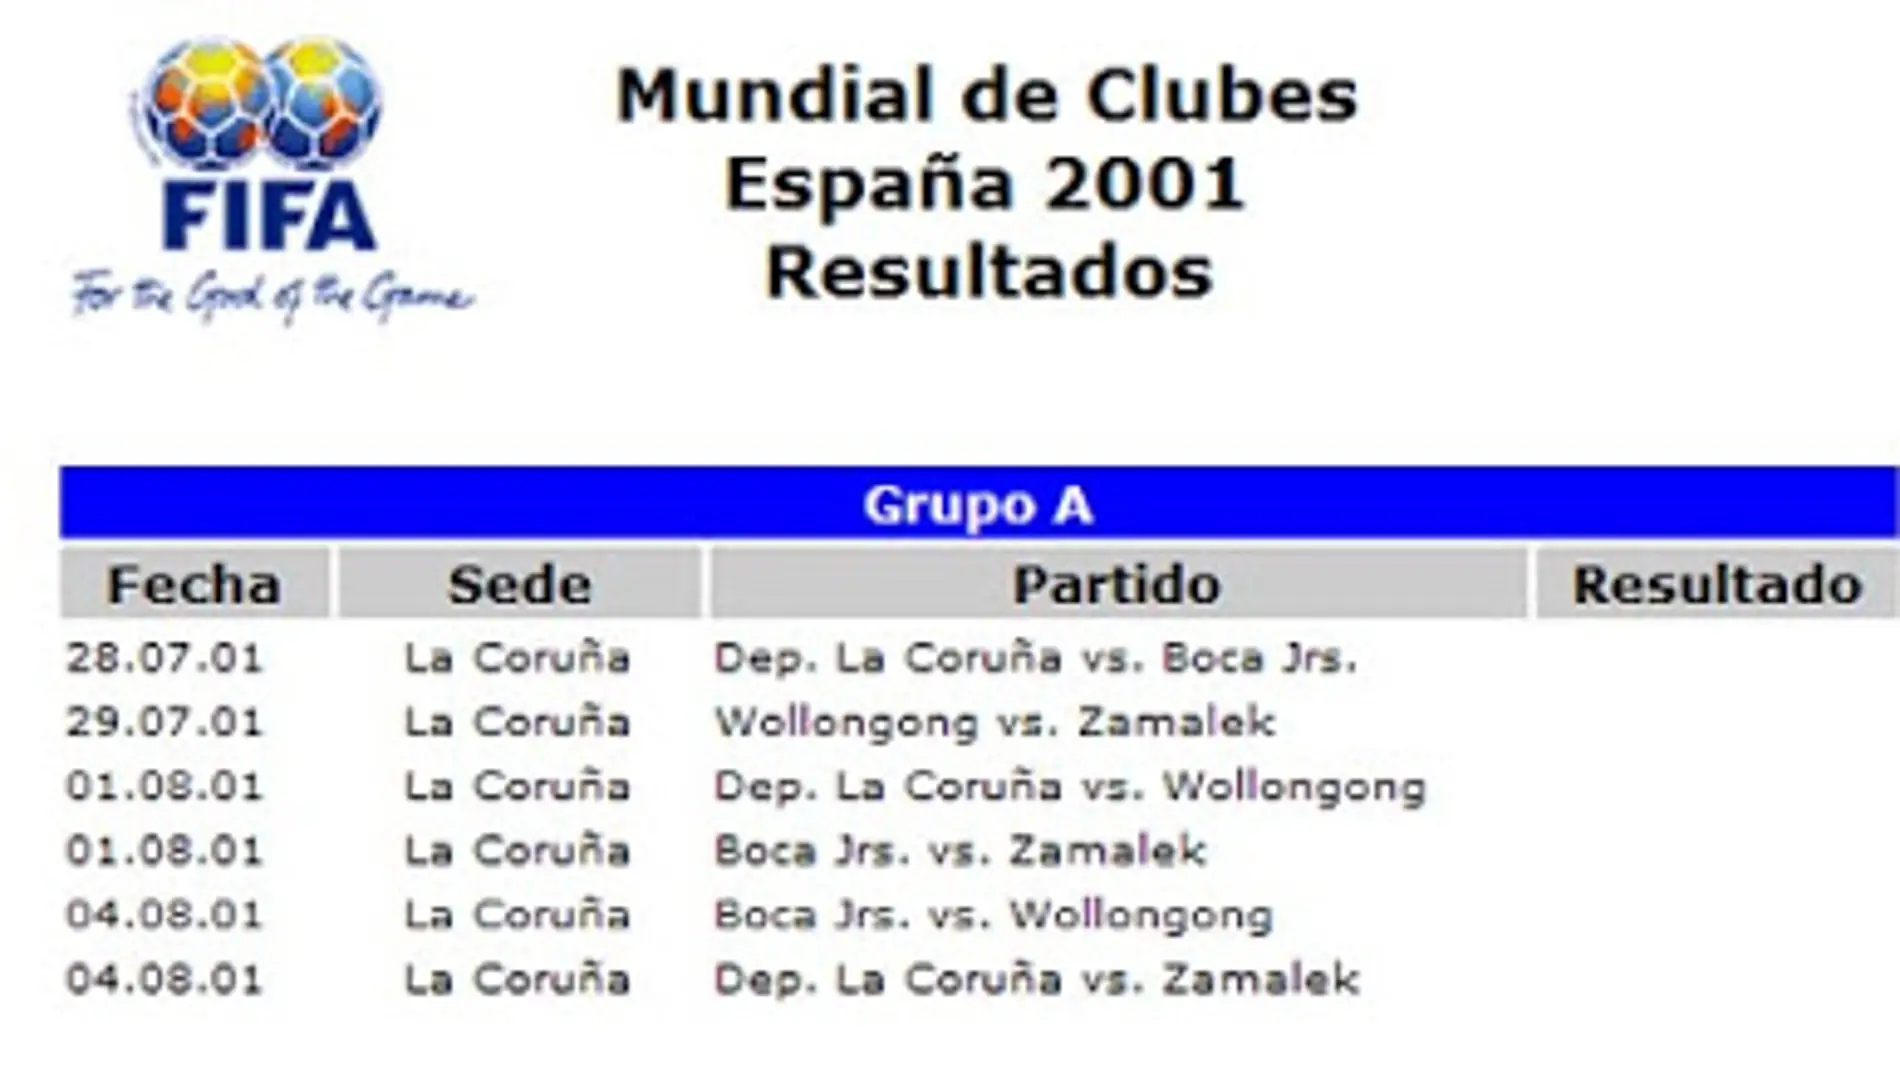 Mundialito de Clubes A Coruña 2001